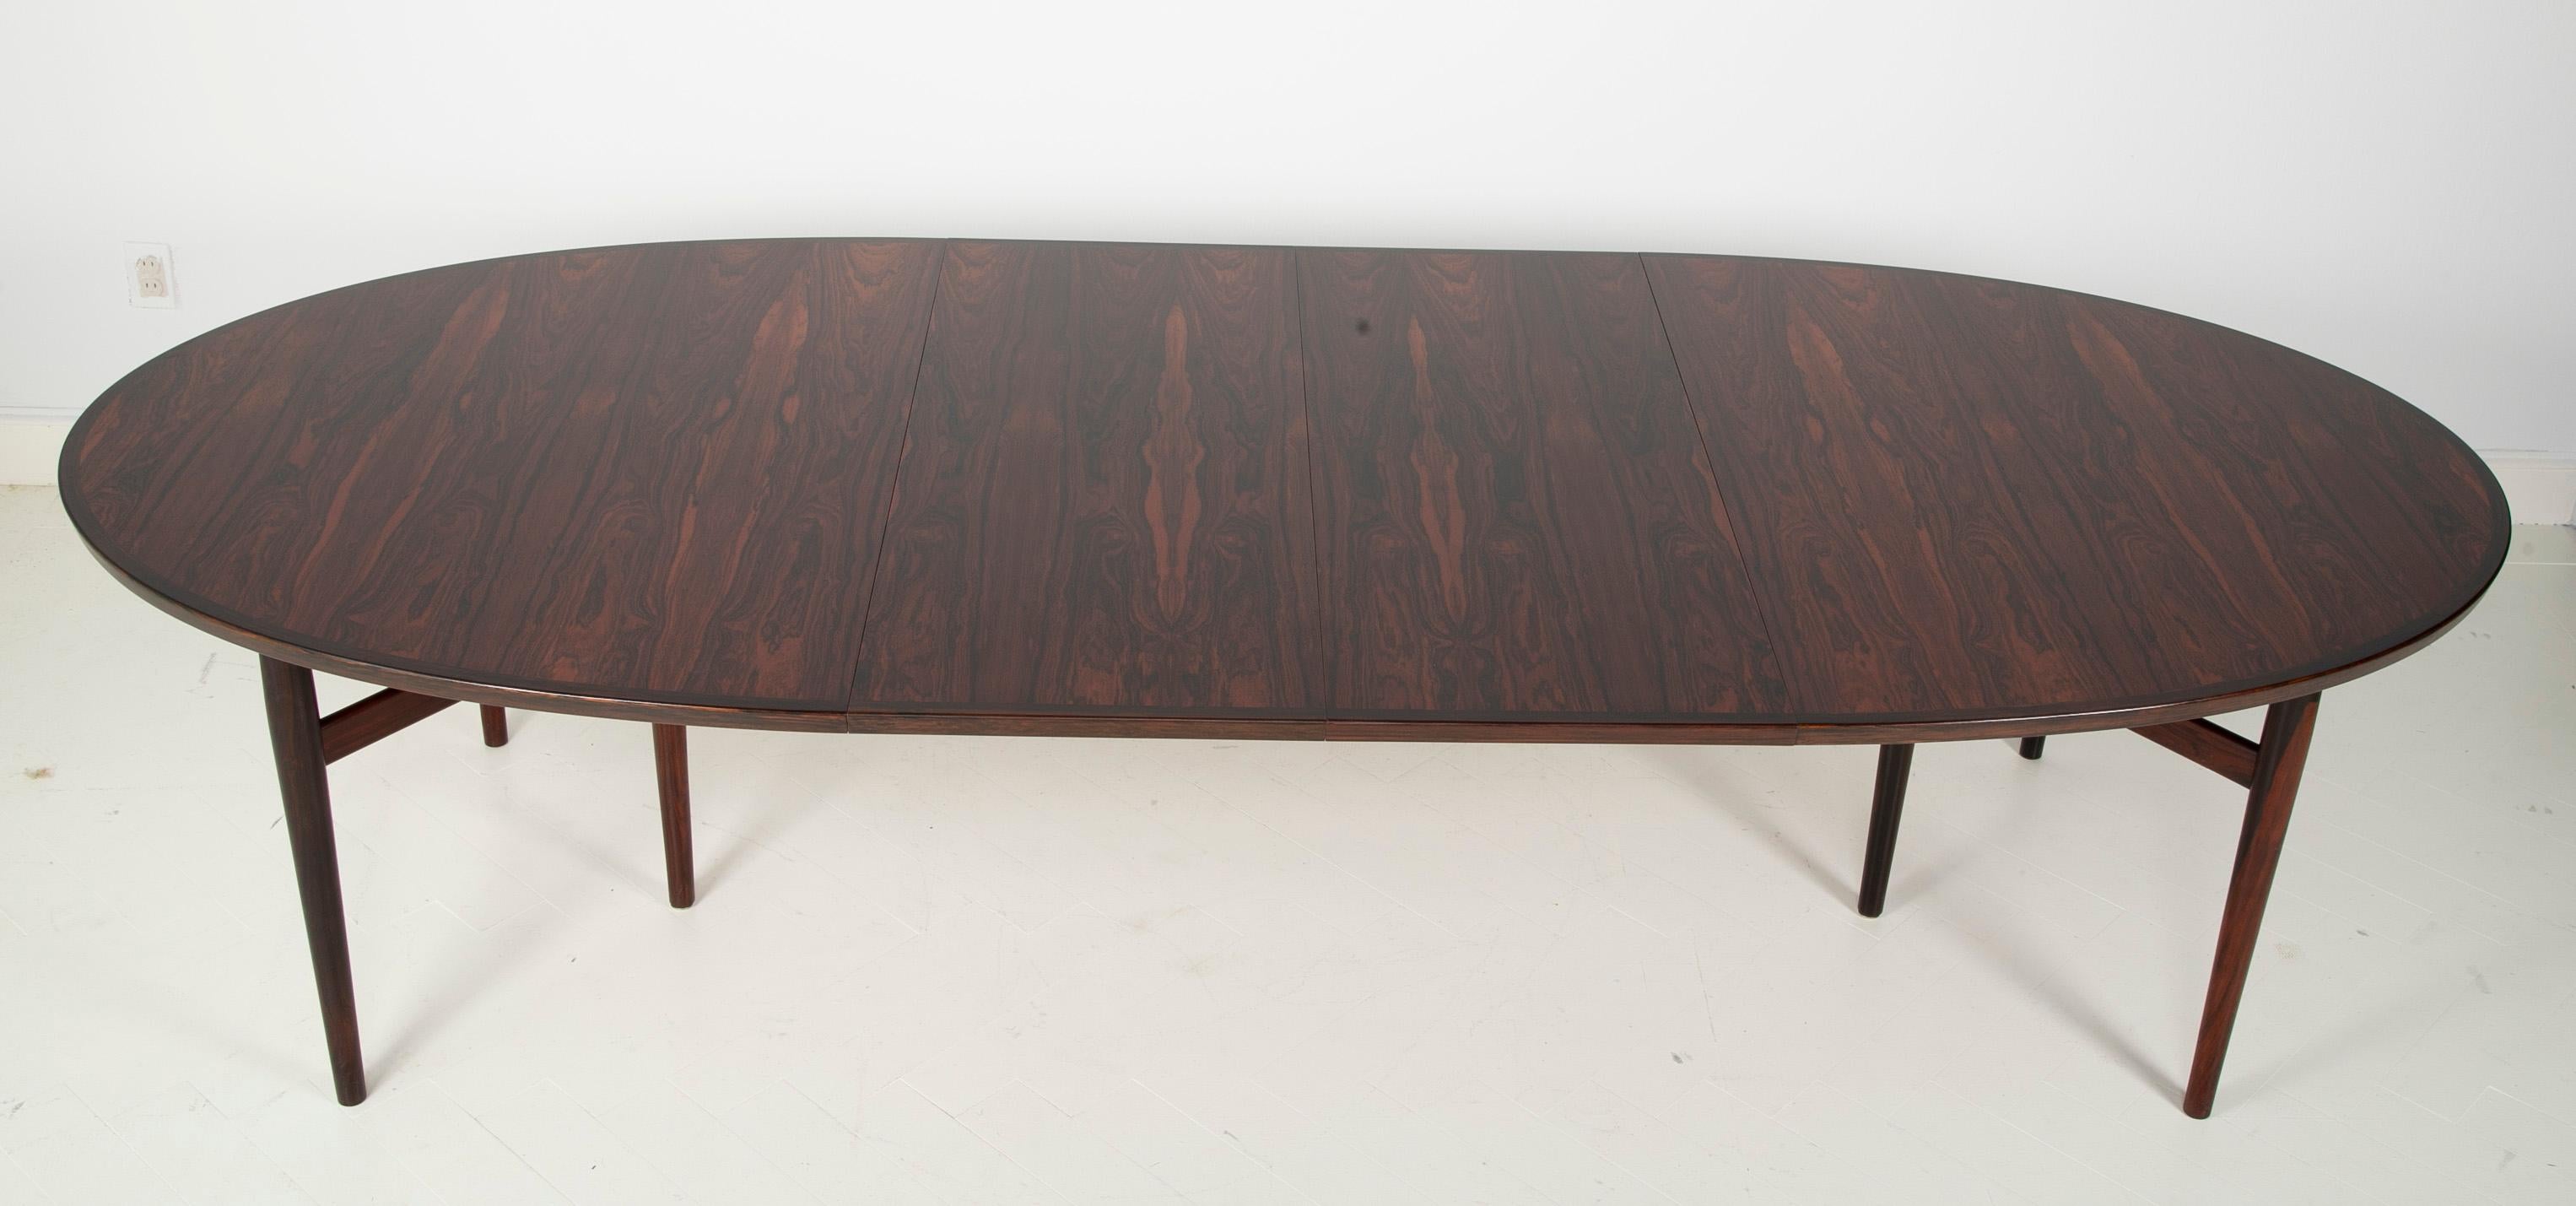 Rosewood Dining Table Designed by Arne Vodder for Sibast Furniture 1